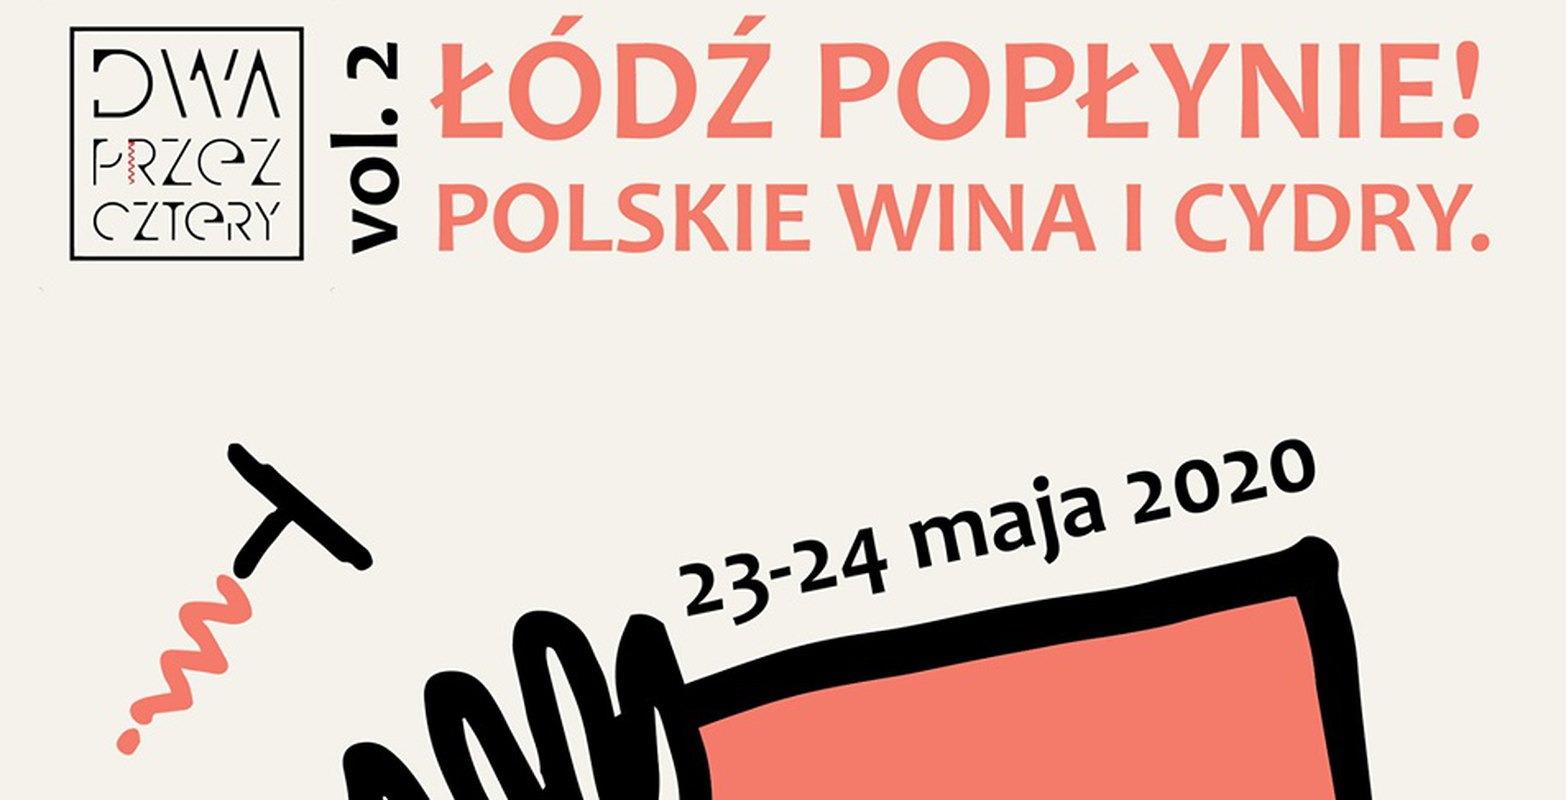 Łódź popłynie. Polskie wina i cydry. vol.2